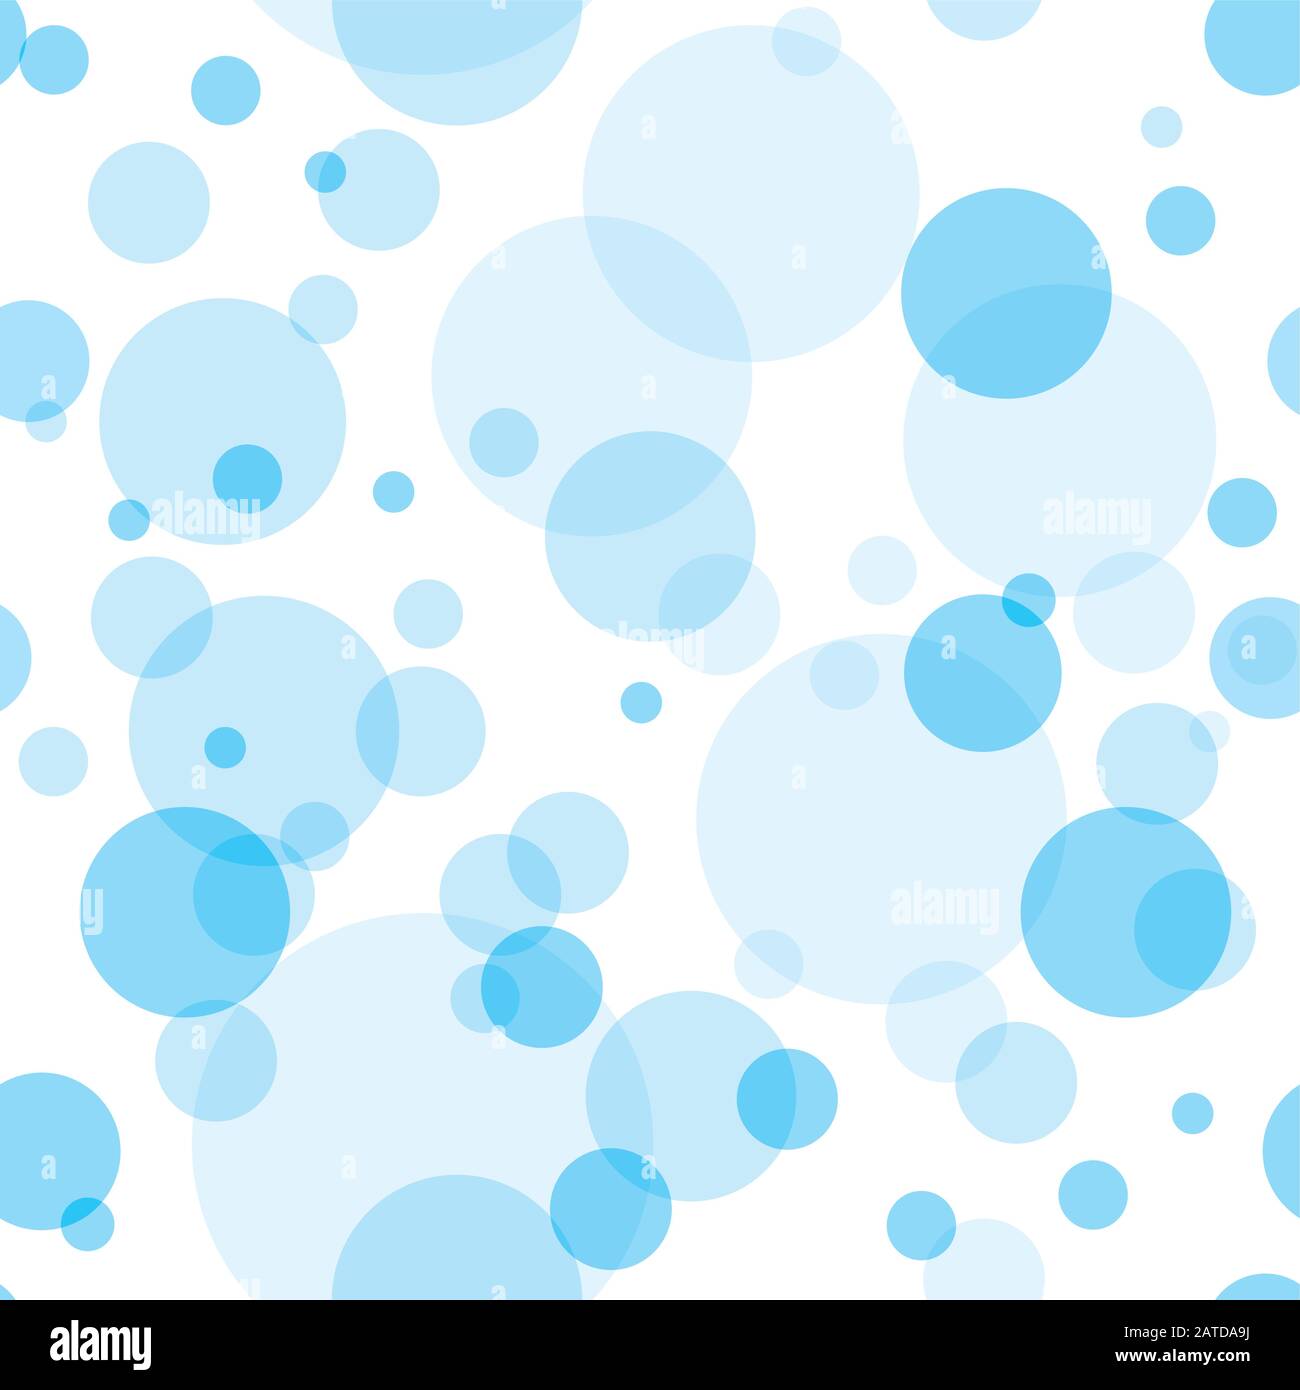 Círculos transparentes patrón sin costuras. Burbujas de azul cielo colocadas aleatoriamente sobre fondo blanco. Ilustración fácil de editar de vectores eps10. Ilustración del Vector